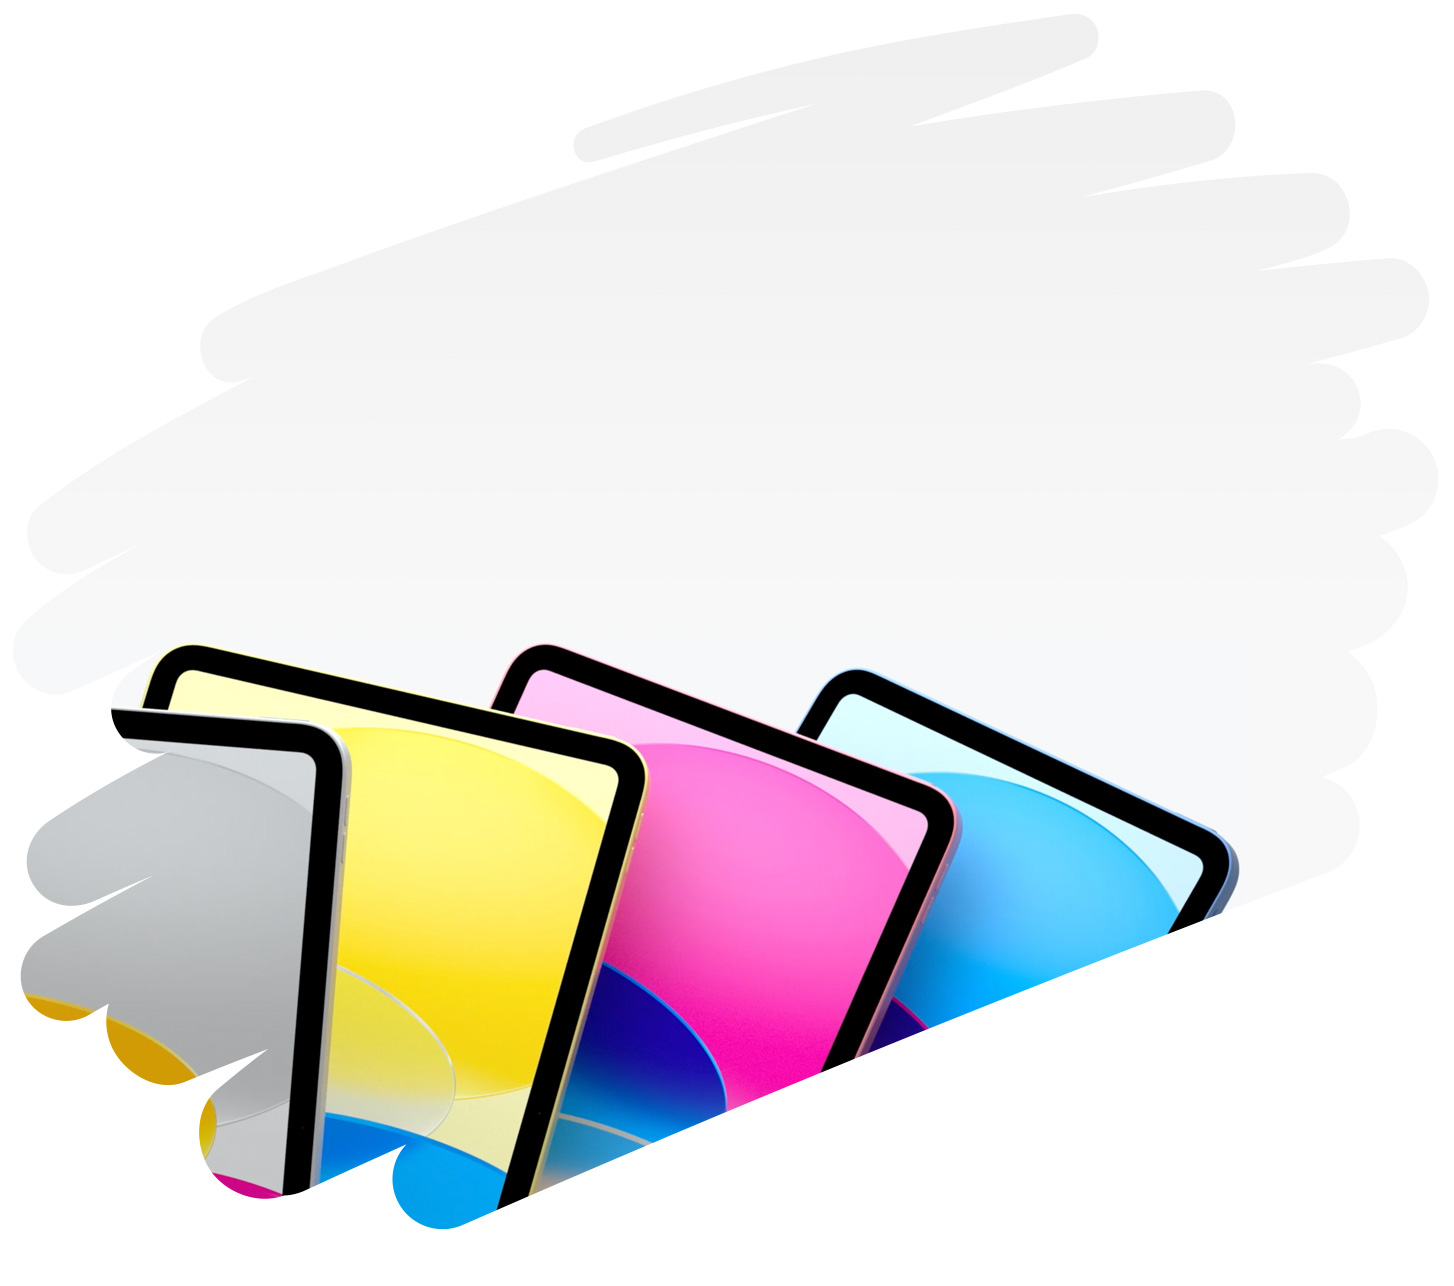 Vários aparelhos iPad coloridos aparecem dentro de traços do Apple Pencil na página.